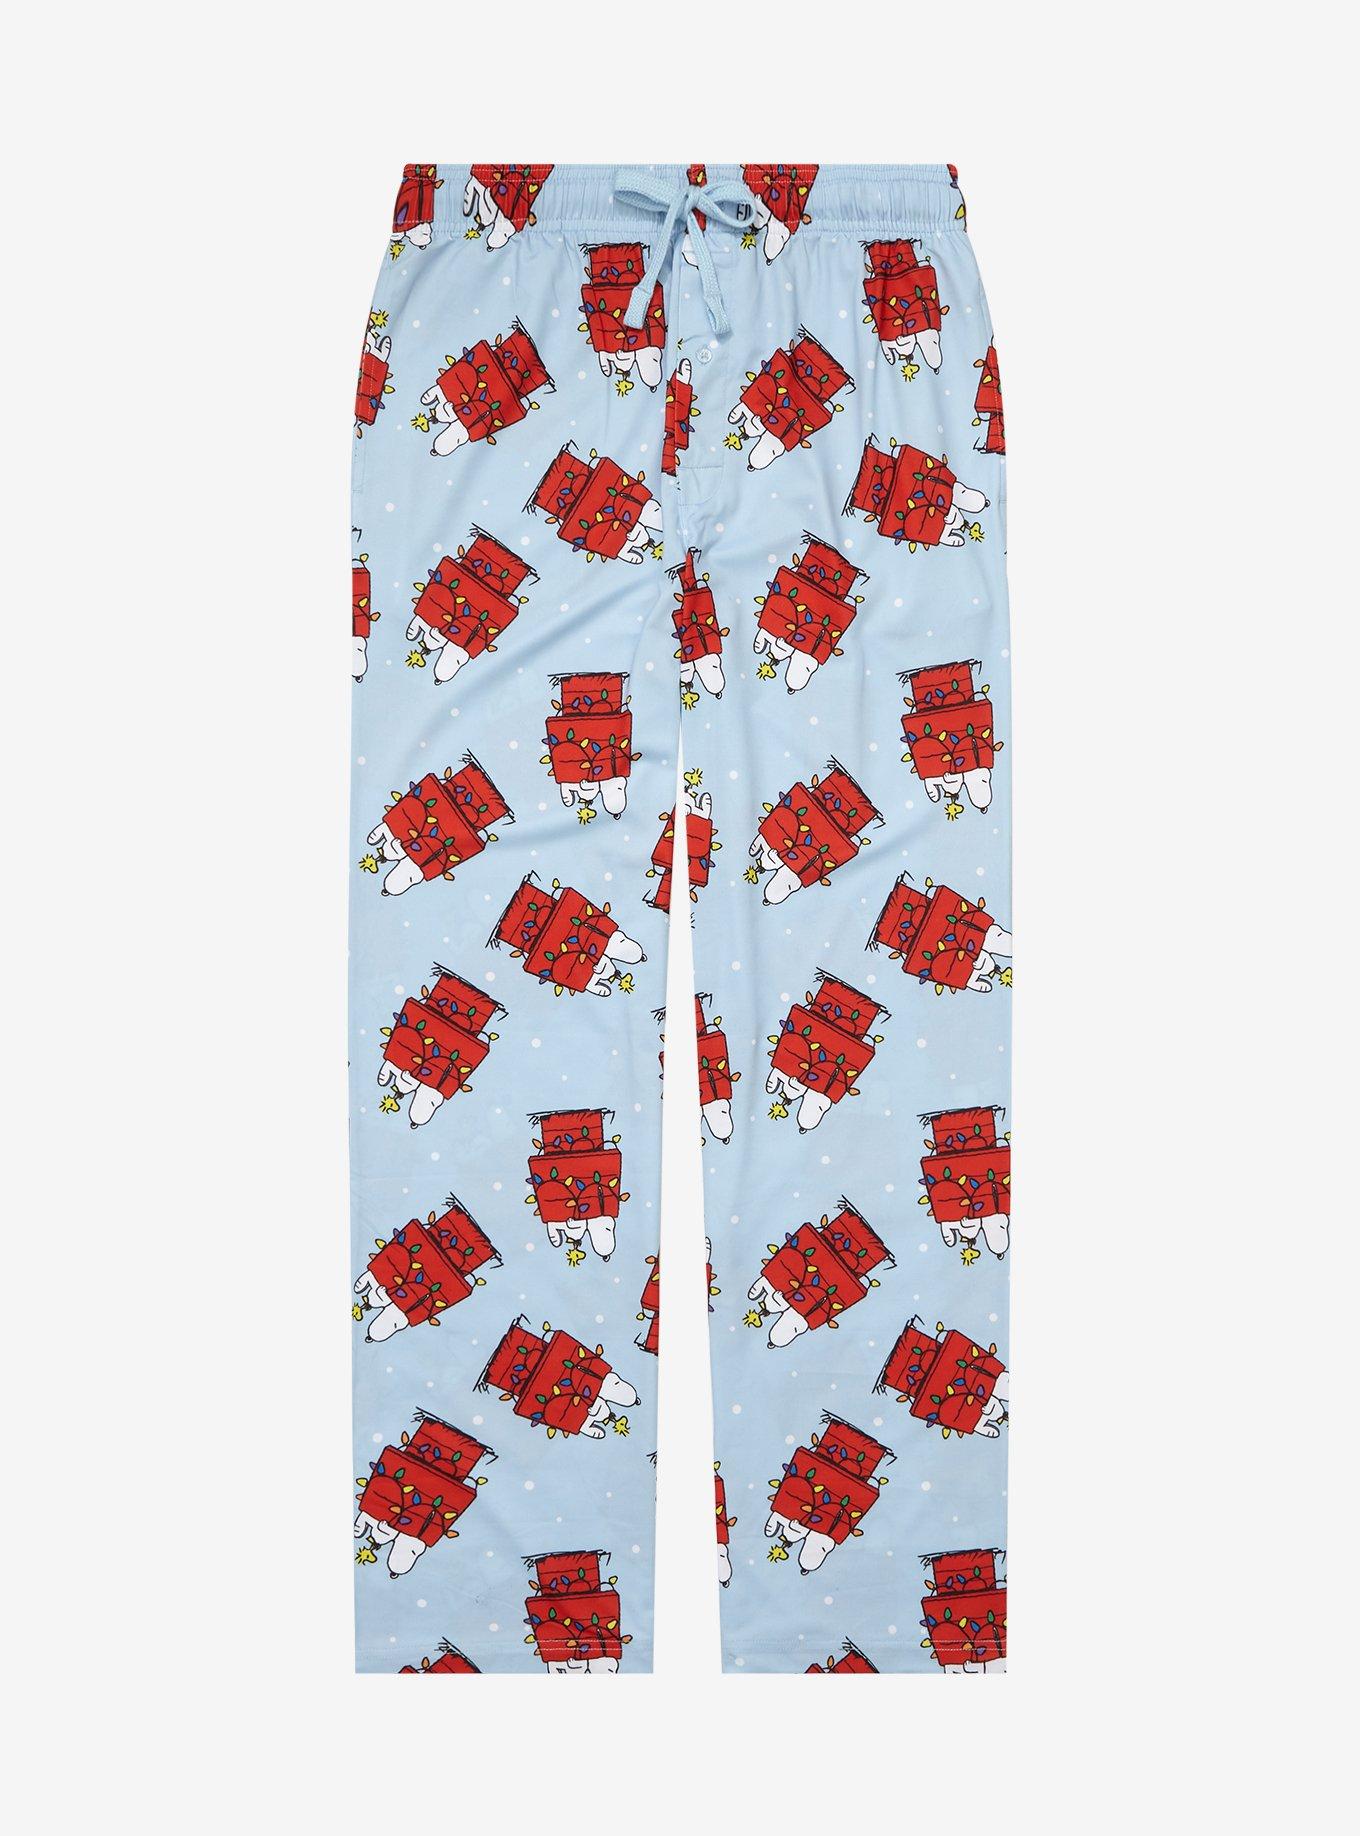 Gingerbread Man Ninja Christmas Pajama Pants Sleep Mens Women S